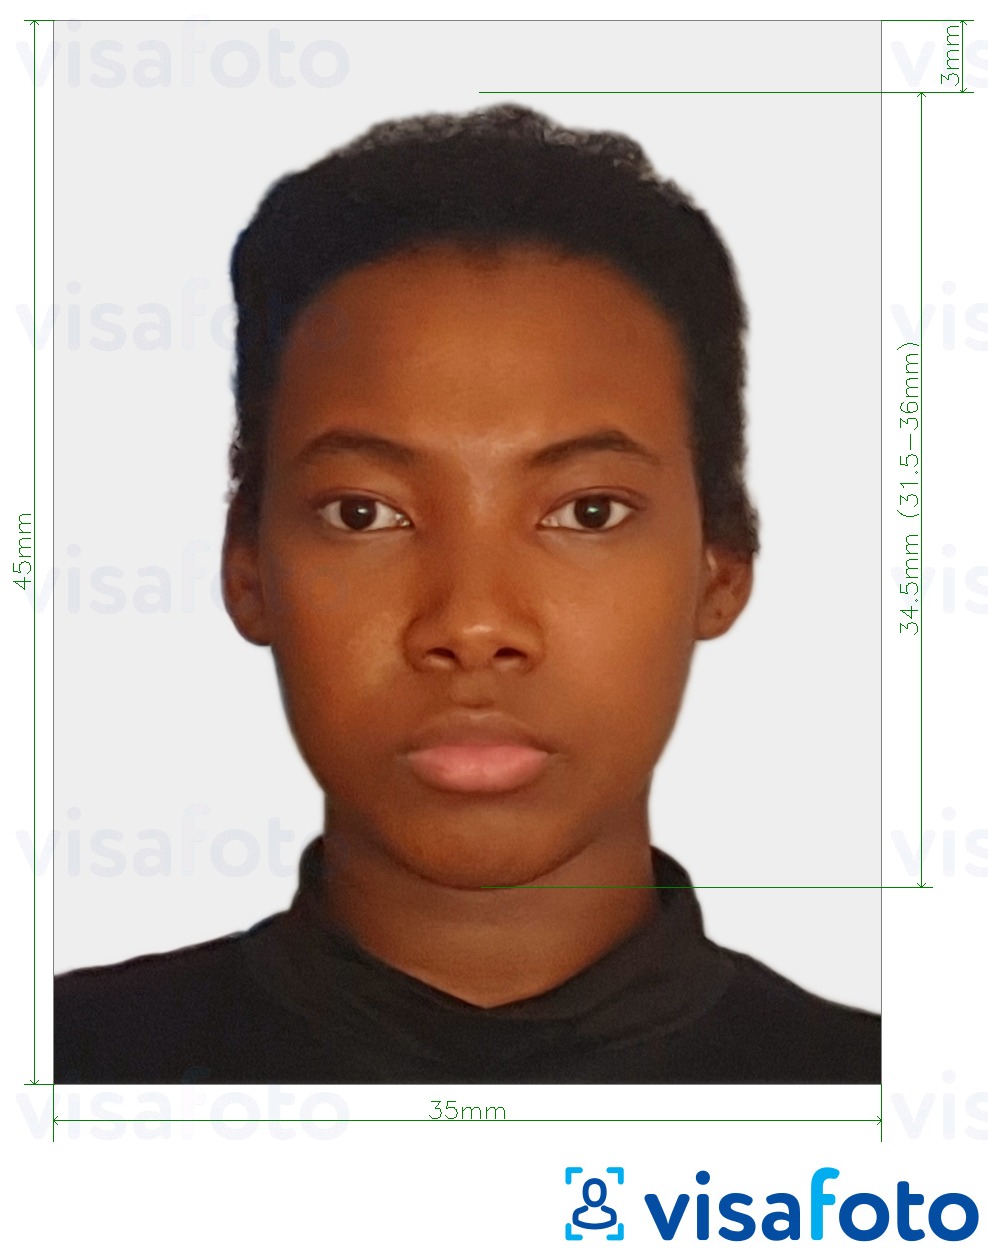 Того паспорты 4,5x3,5 см (45х35 мм) үшін нақты мөлшер өлшемі бар фото үлгісі